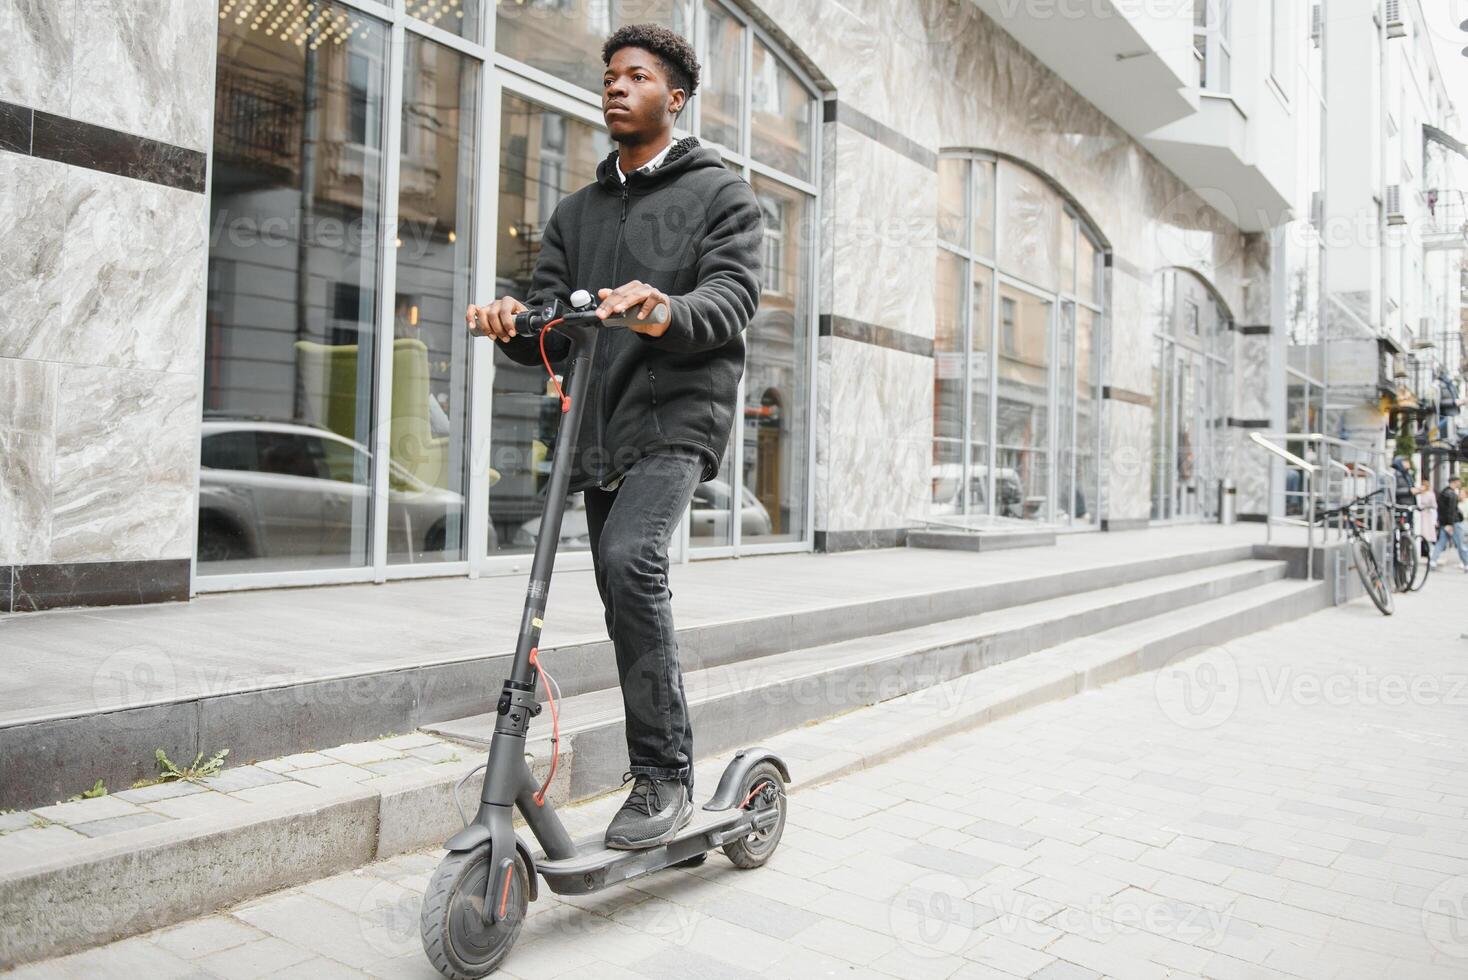 plein corps côté portrait content africain américain homme sur mobile scooter sur rue photo